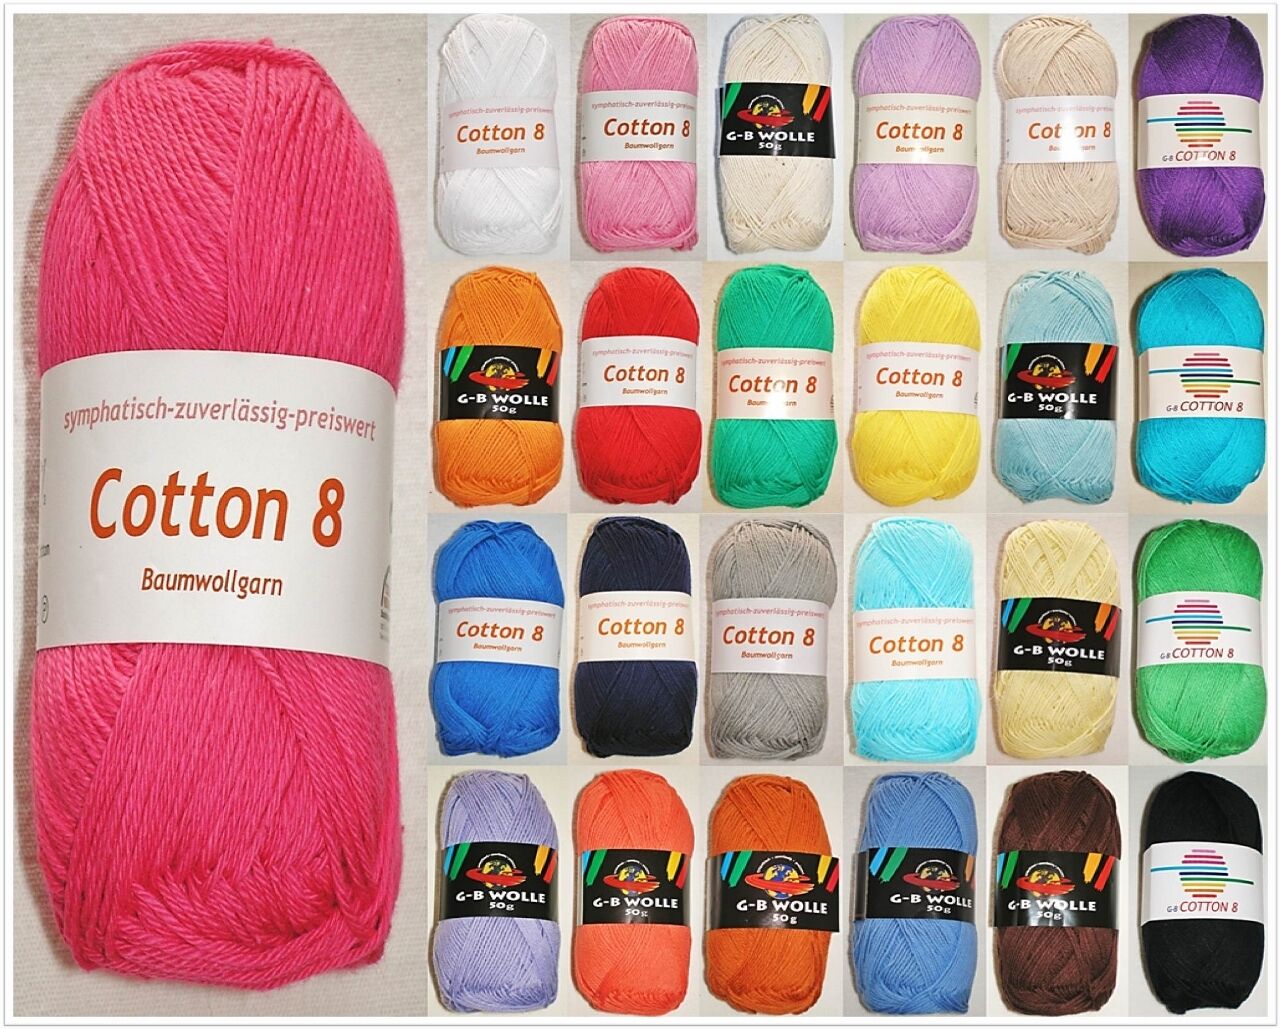 G-B Cotton 8, 50g Baumwollgarn, Basic- / Standardgarn, Wolle & Garne